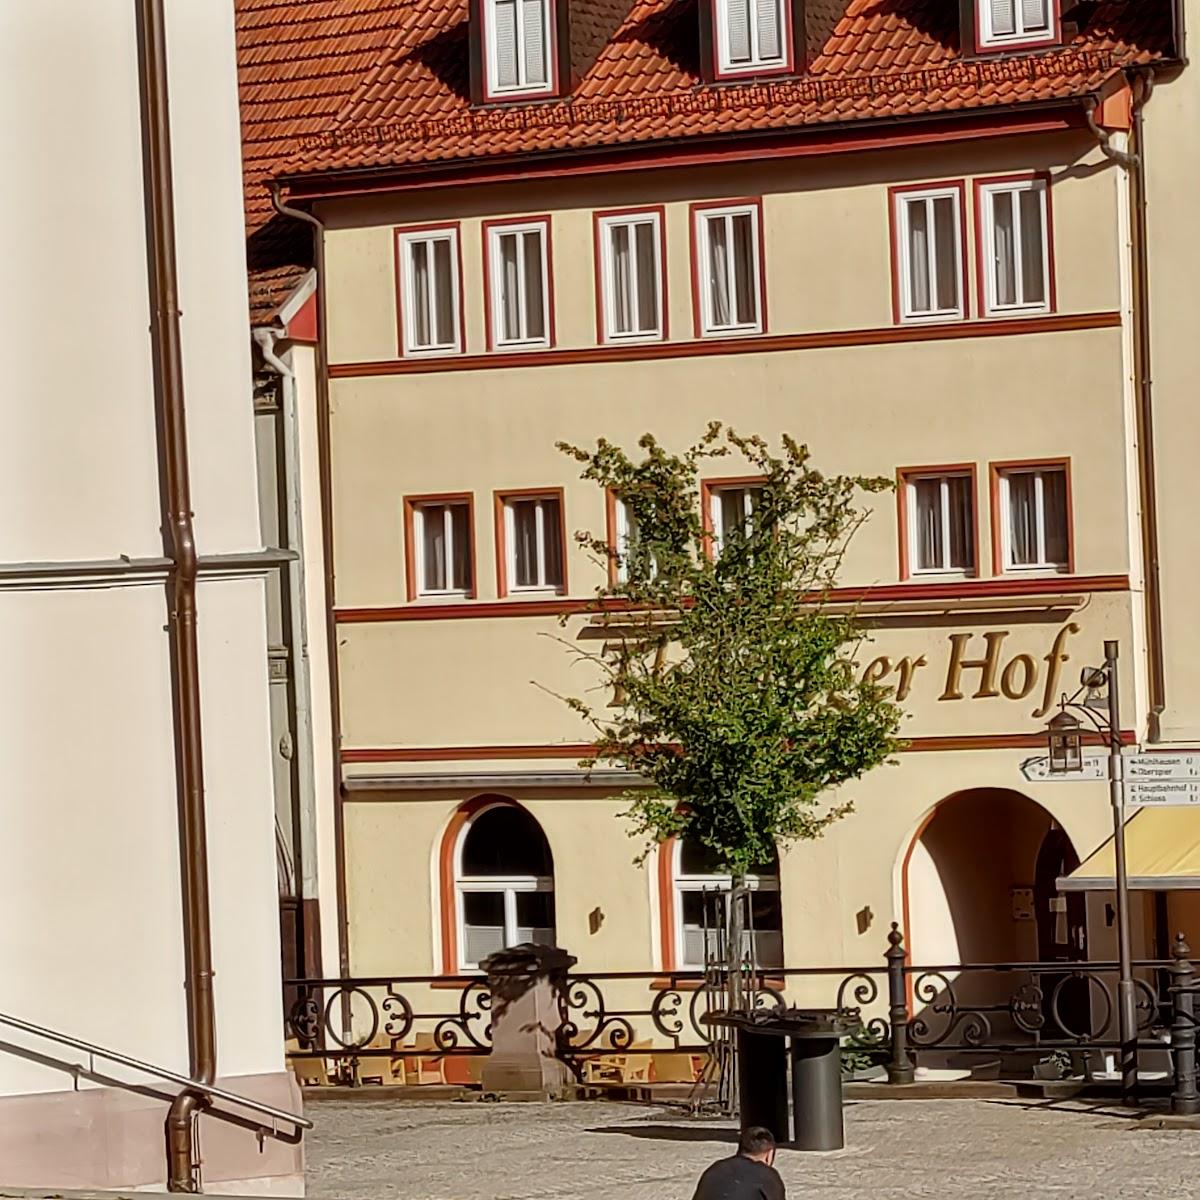 Restaurant "Hotel Thüringer Hof" in Dermbach